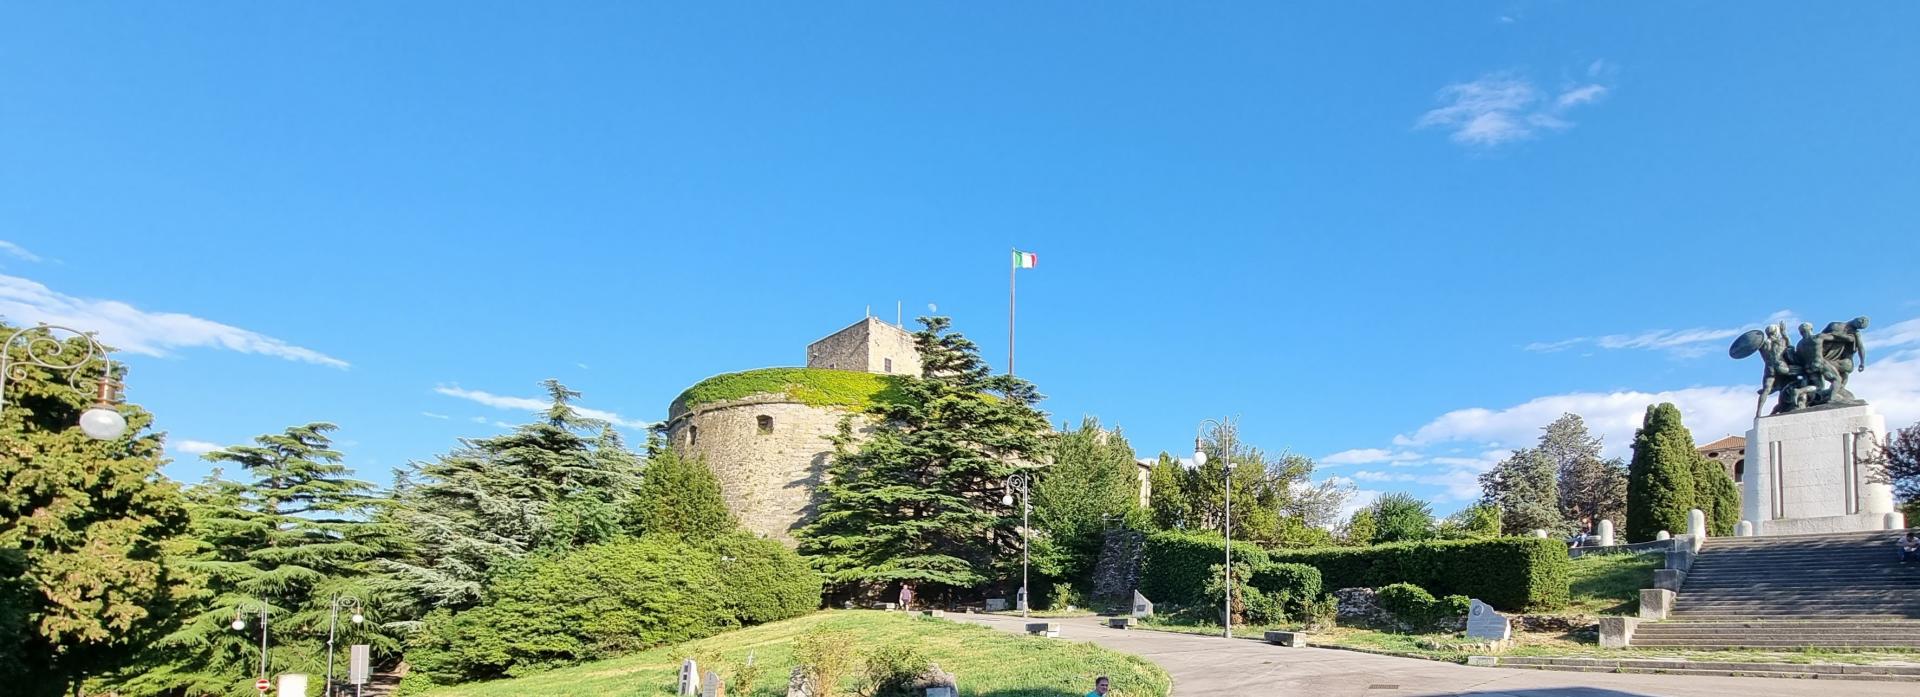 Castle di San Giusto Image